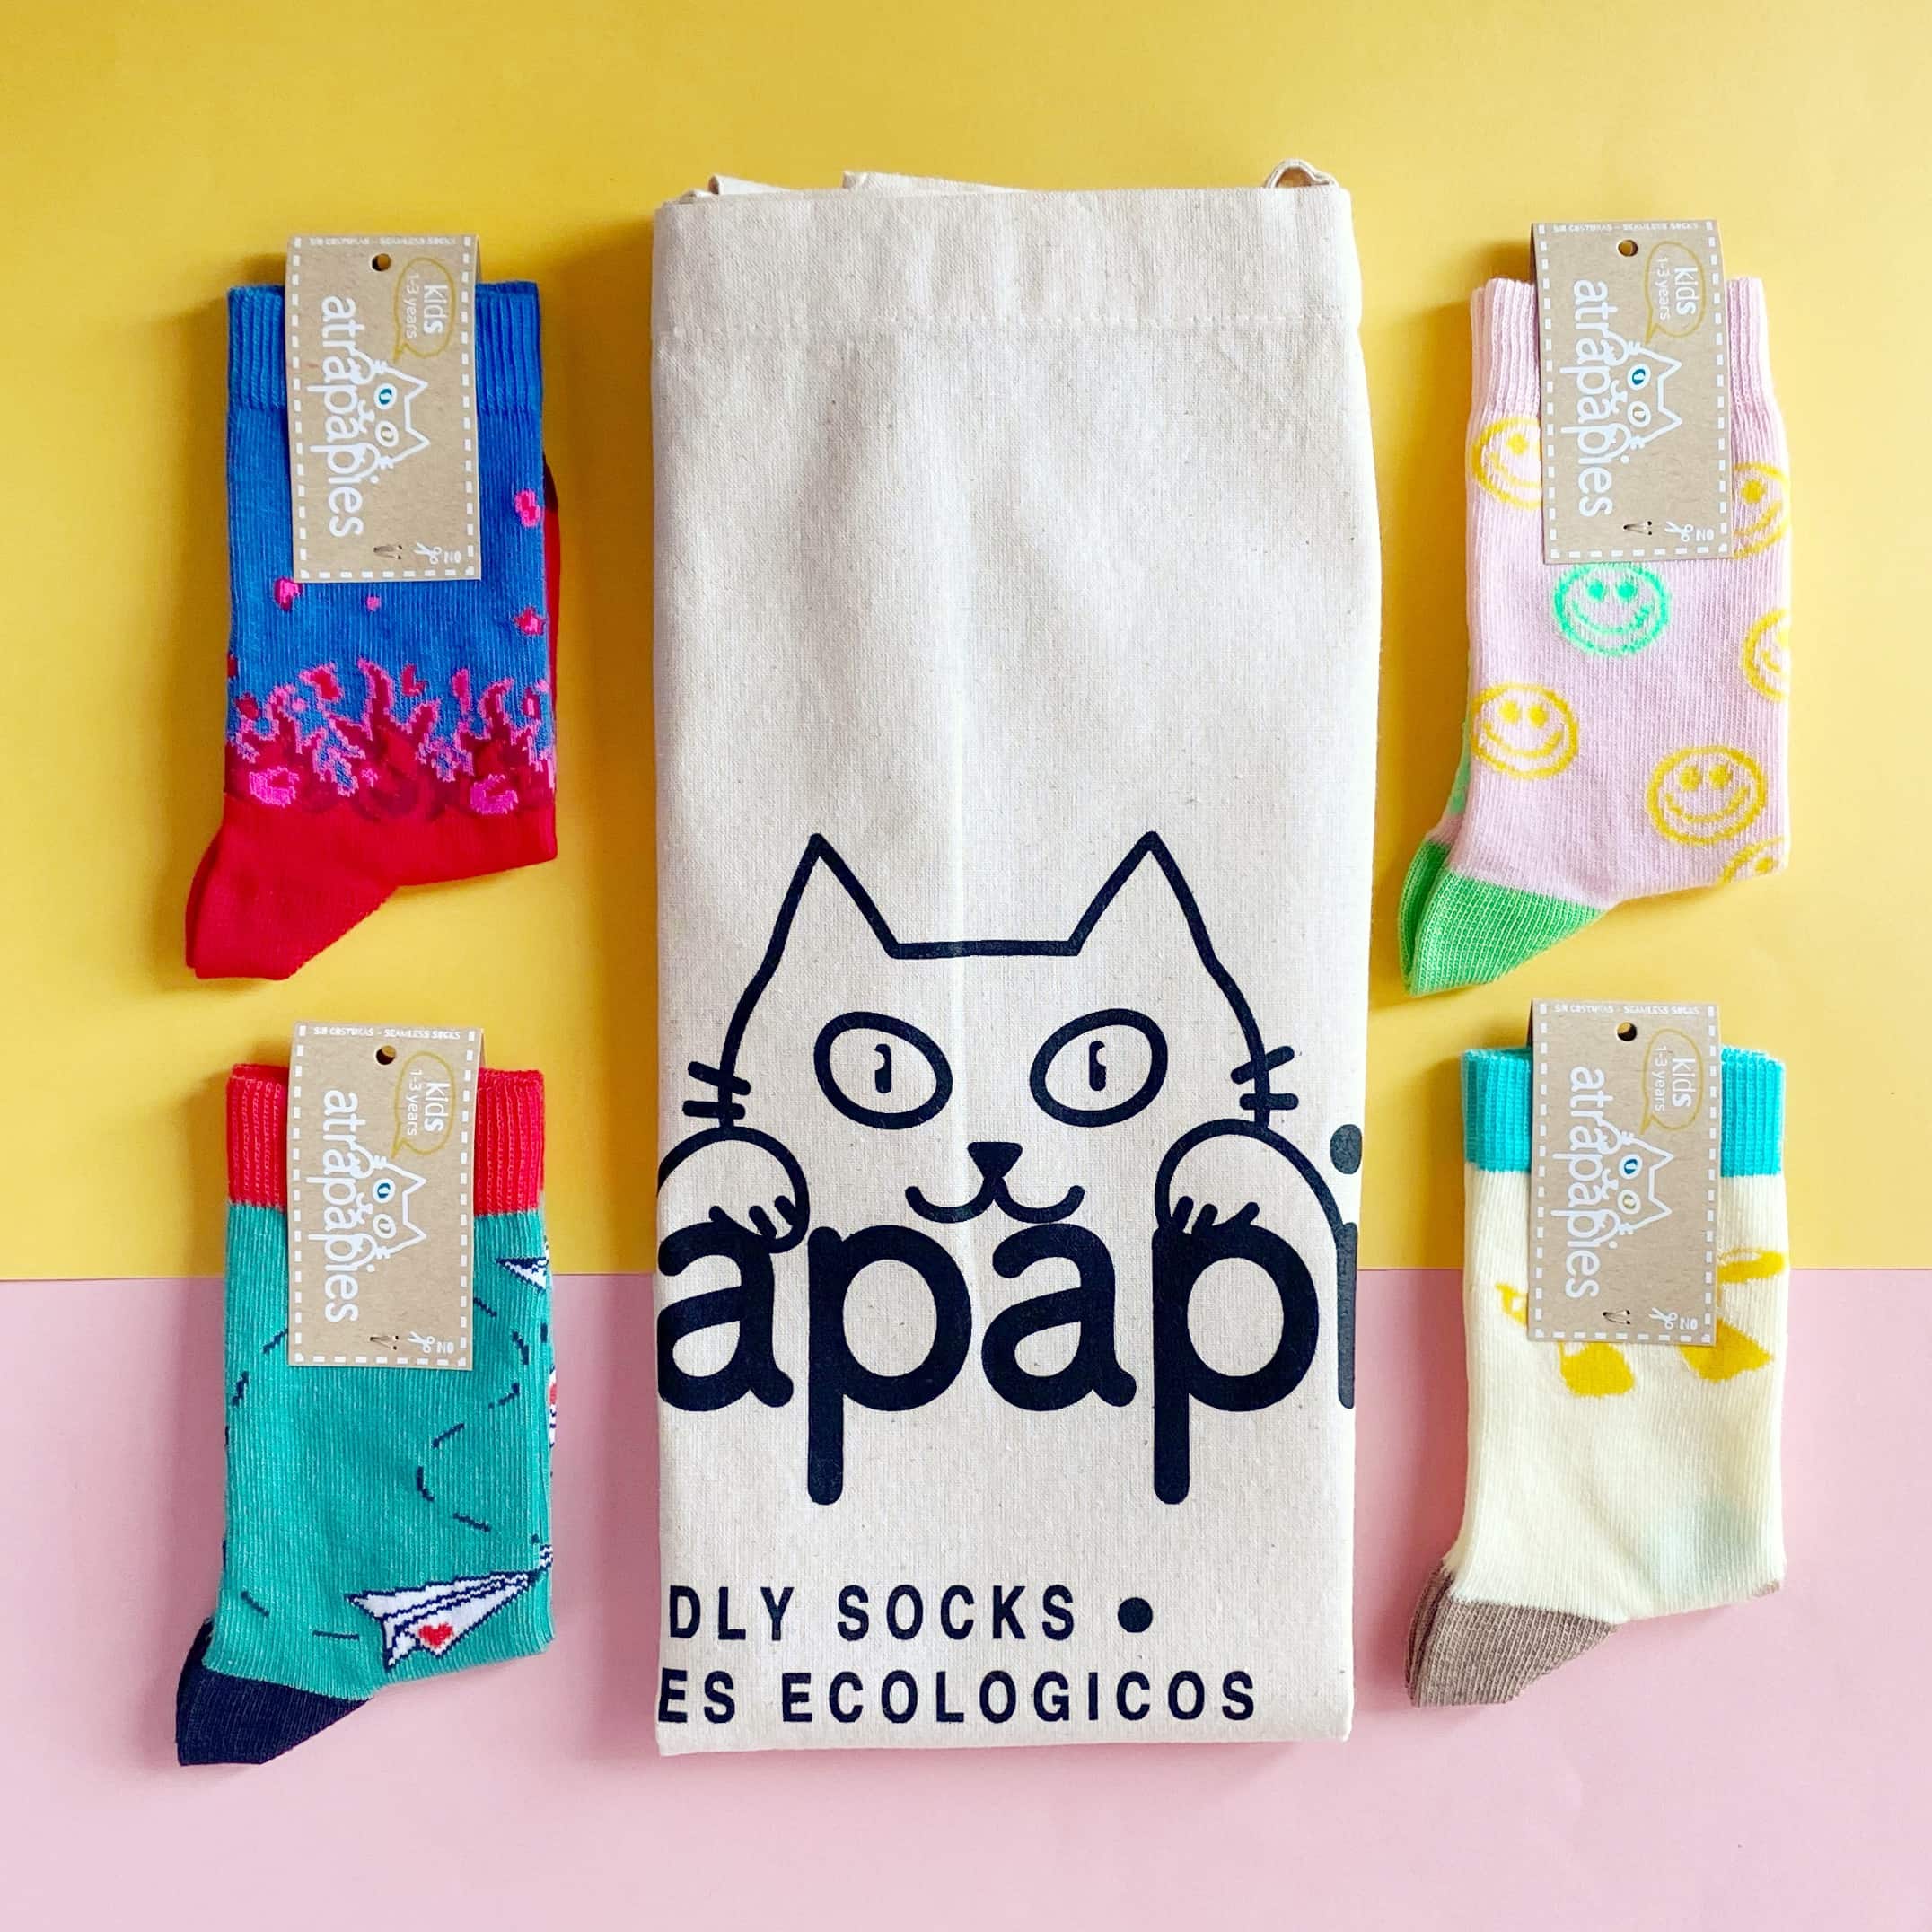 Pack de calcetines para niños sin costuras